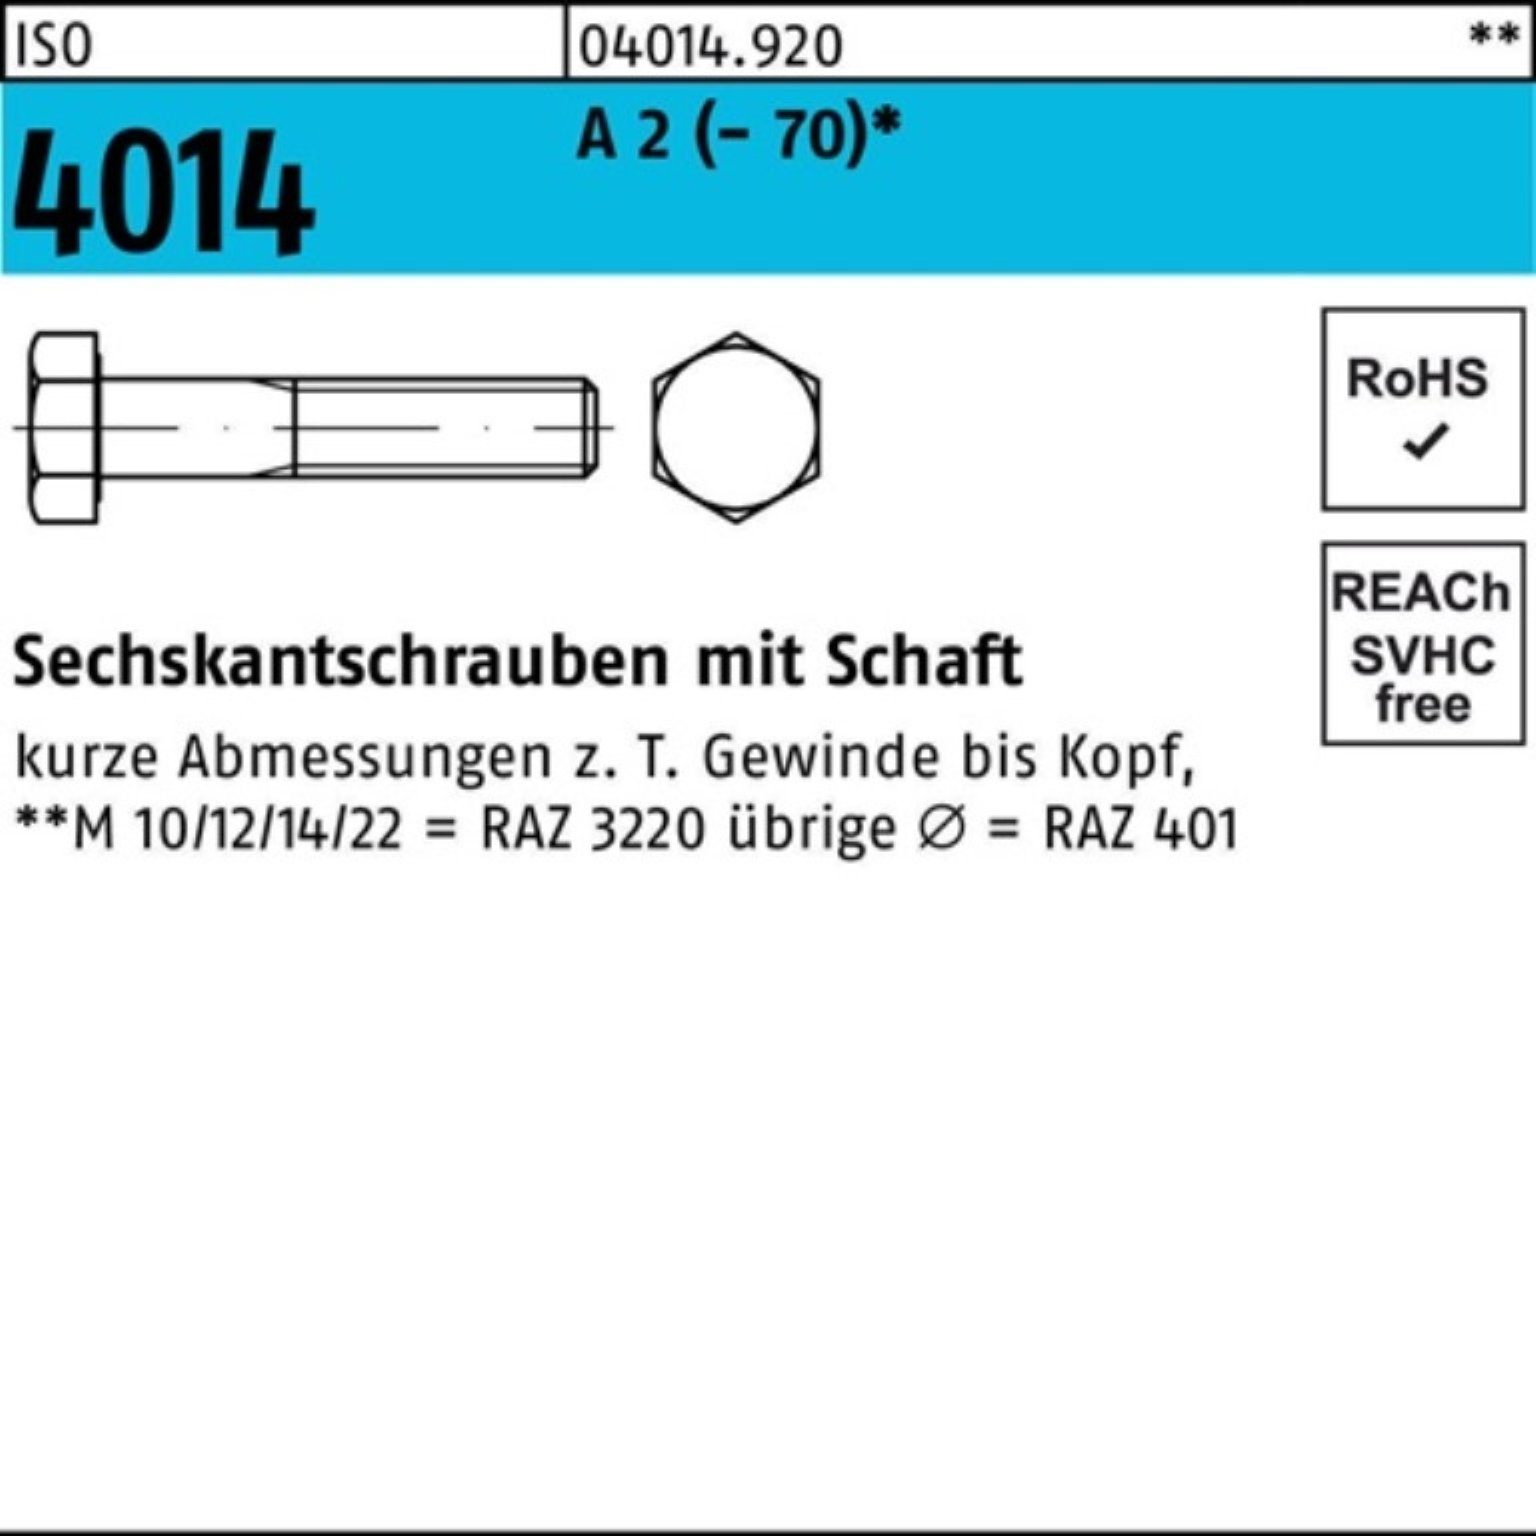 25 Pack 170 Schaft Sechskantschraube 4014 (70) ISO A 2 Sechskantschraube Bufab St 100er M8x